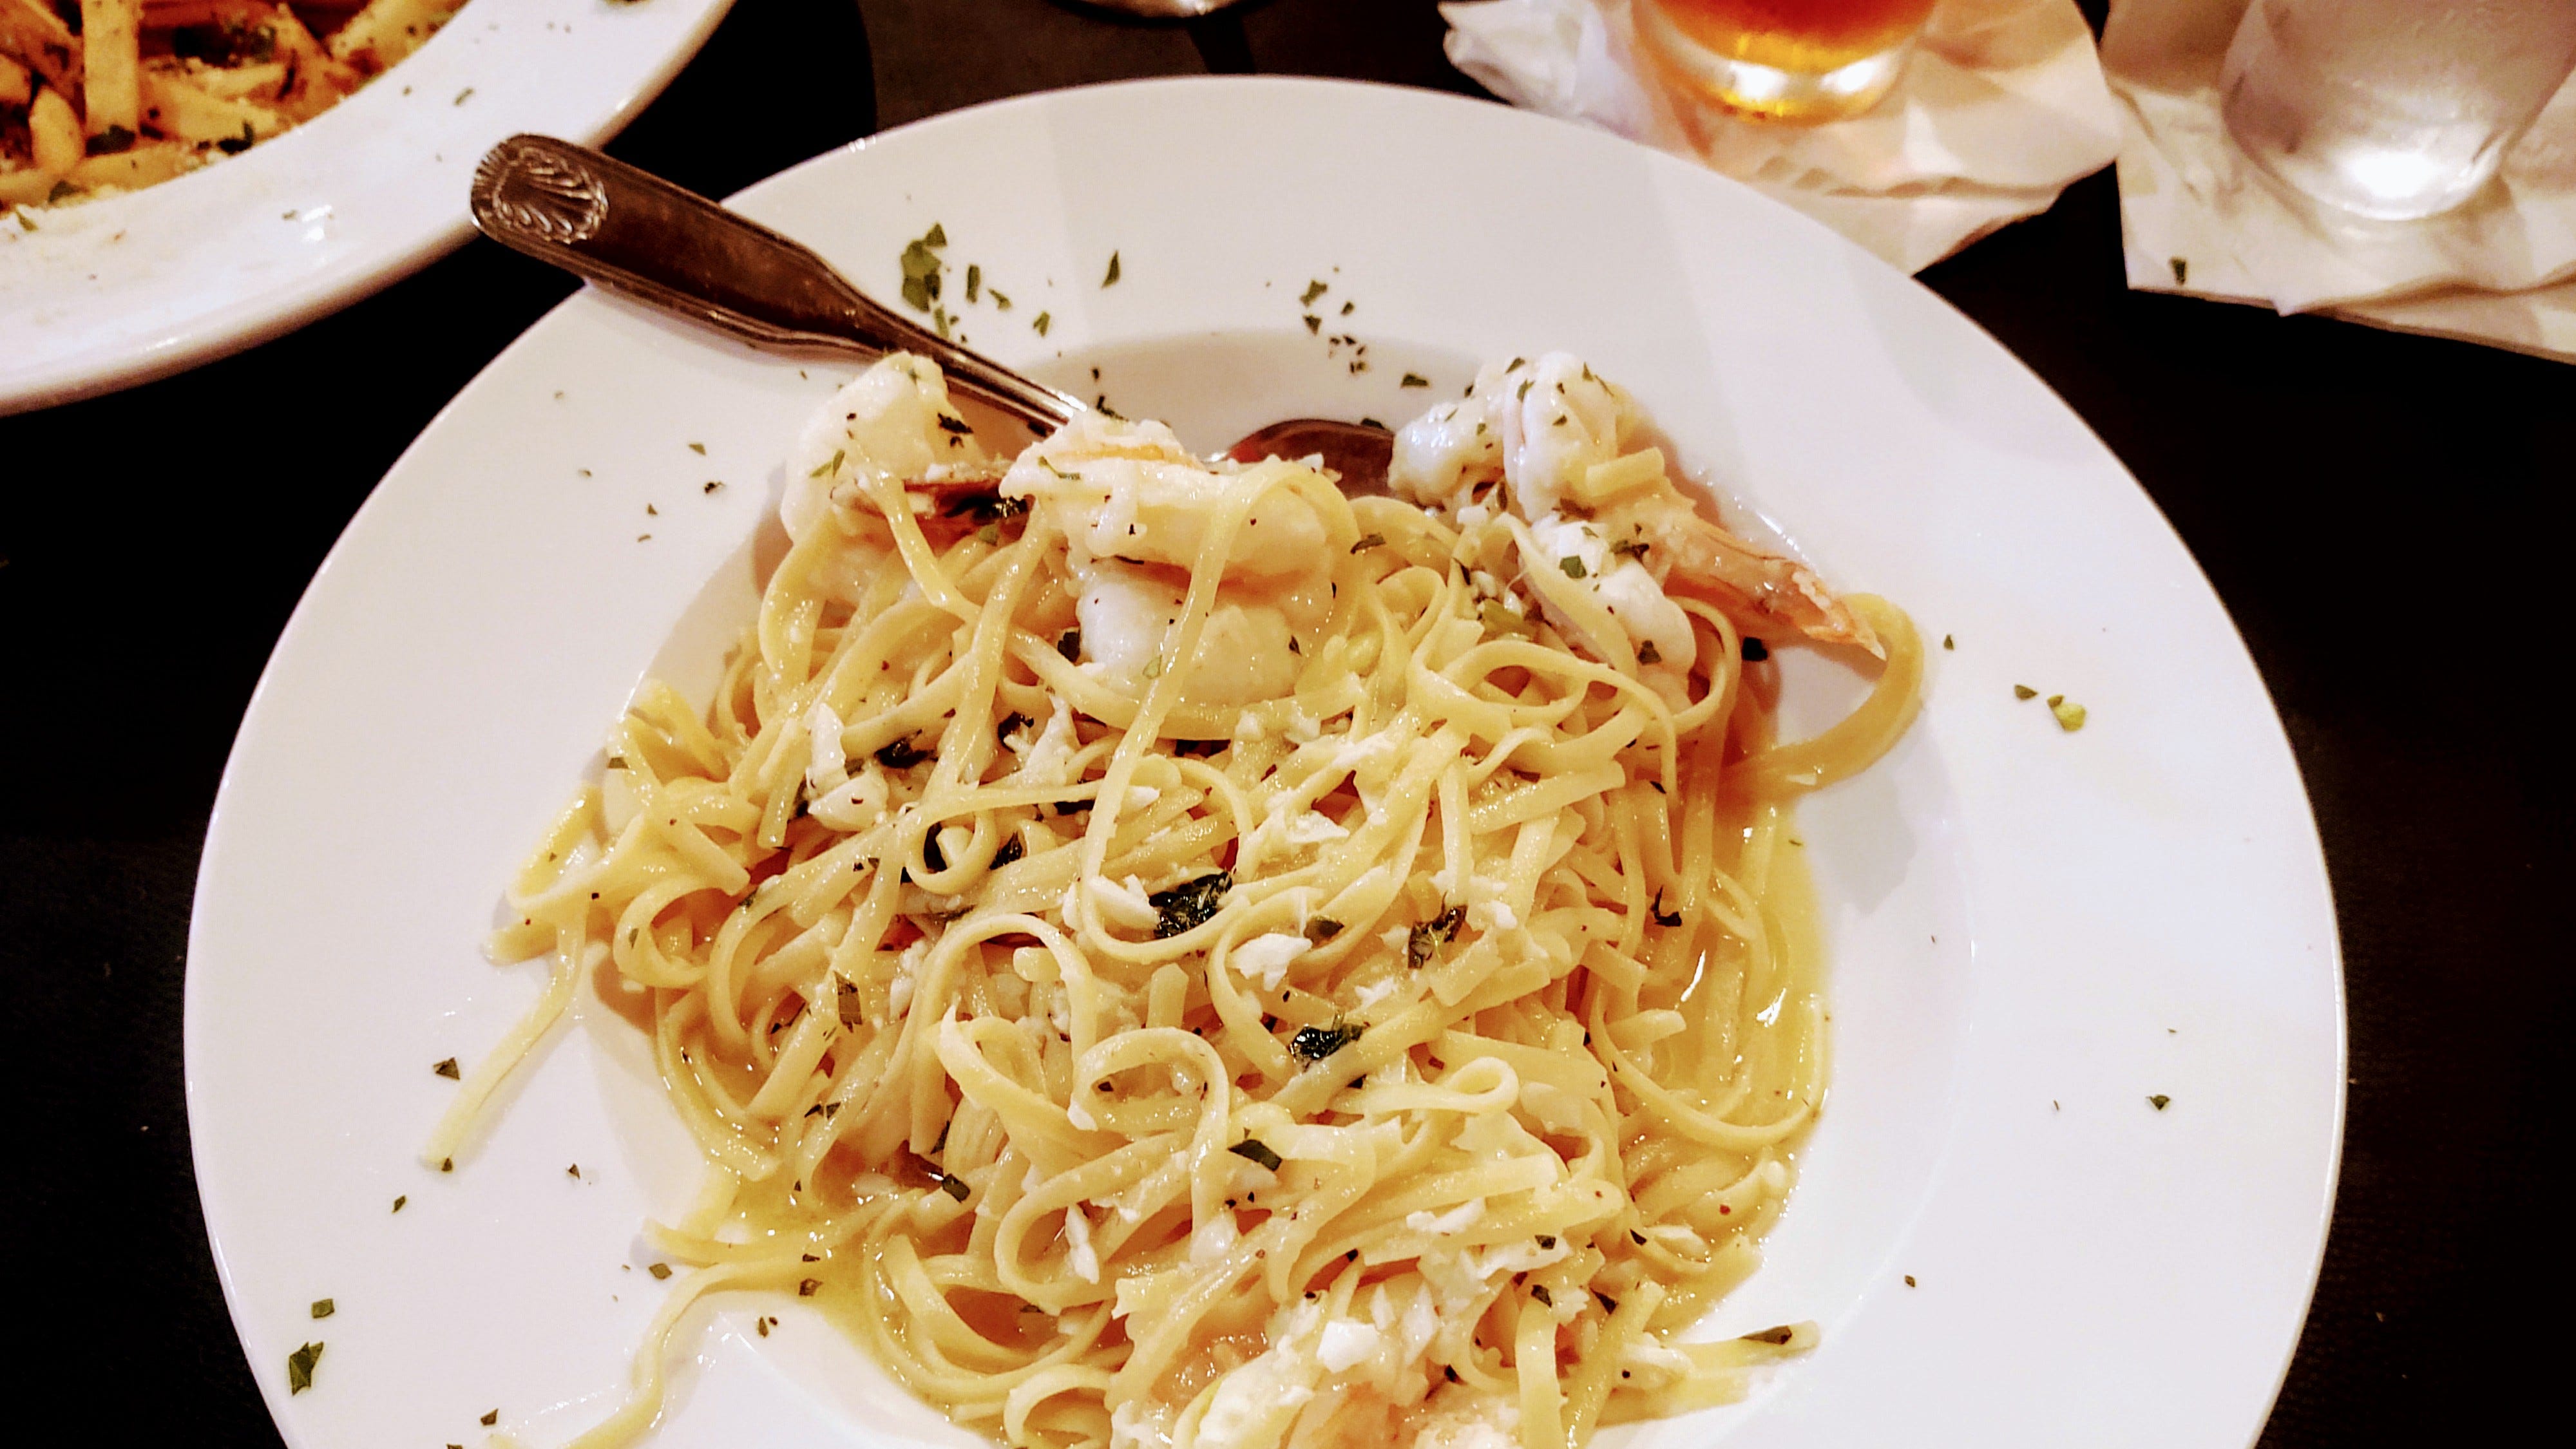 Armani seleziona gamberi giganti per l'antipasto di scampi, serviti con linguine in salsa di vino all'aglio.